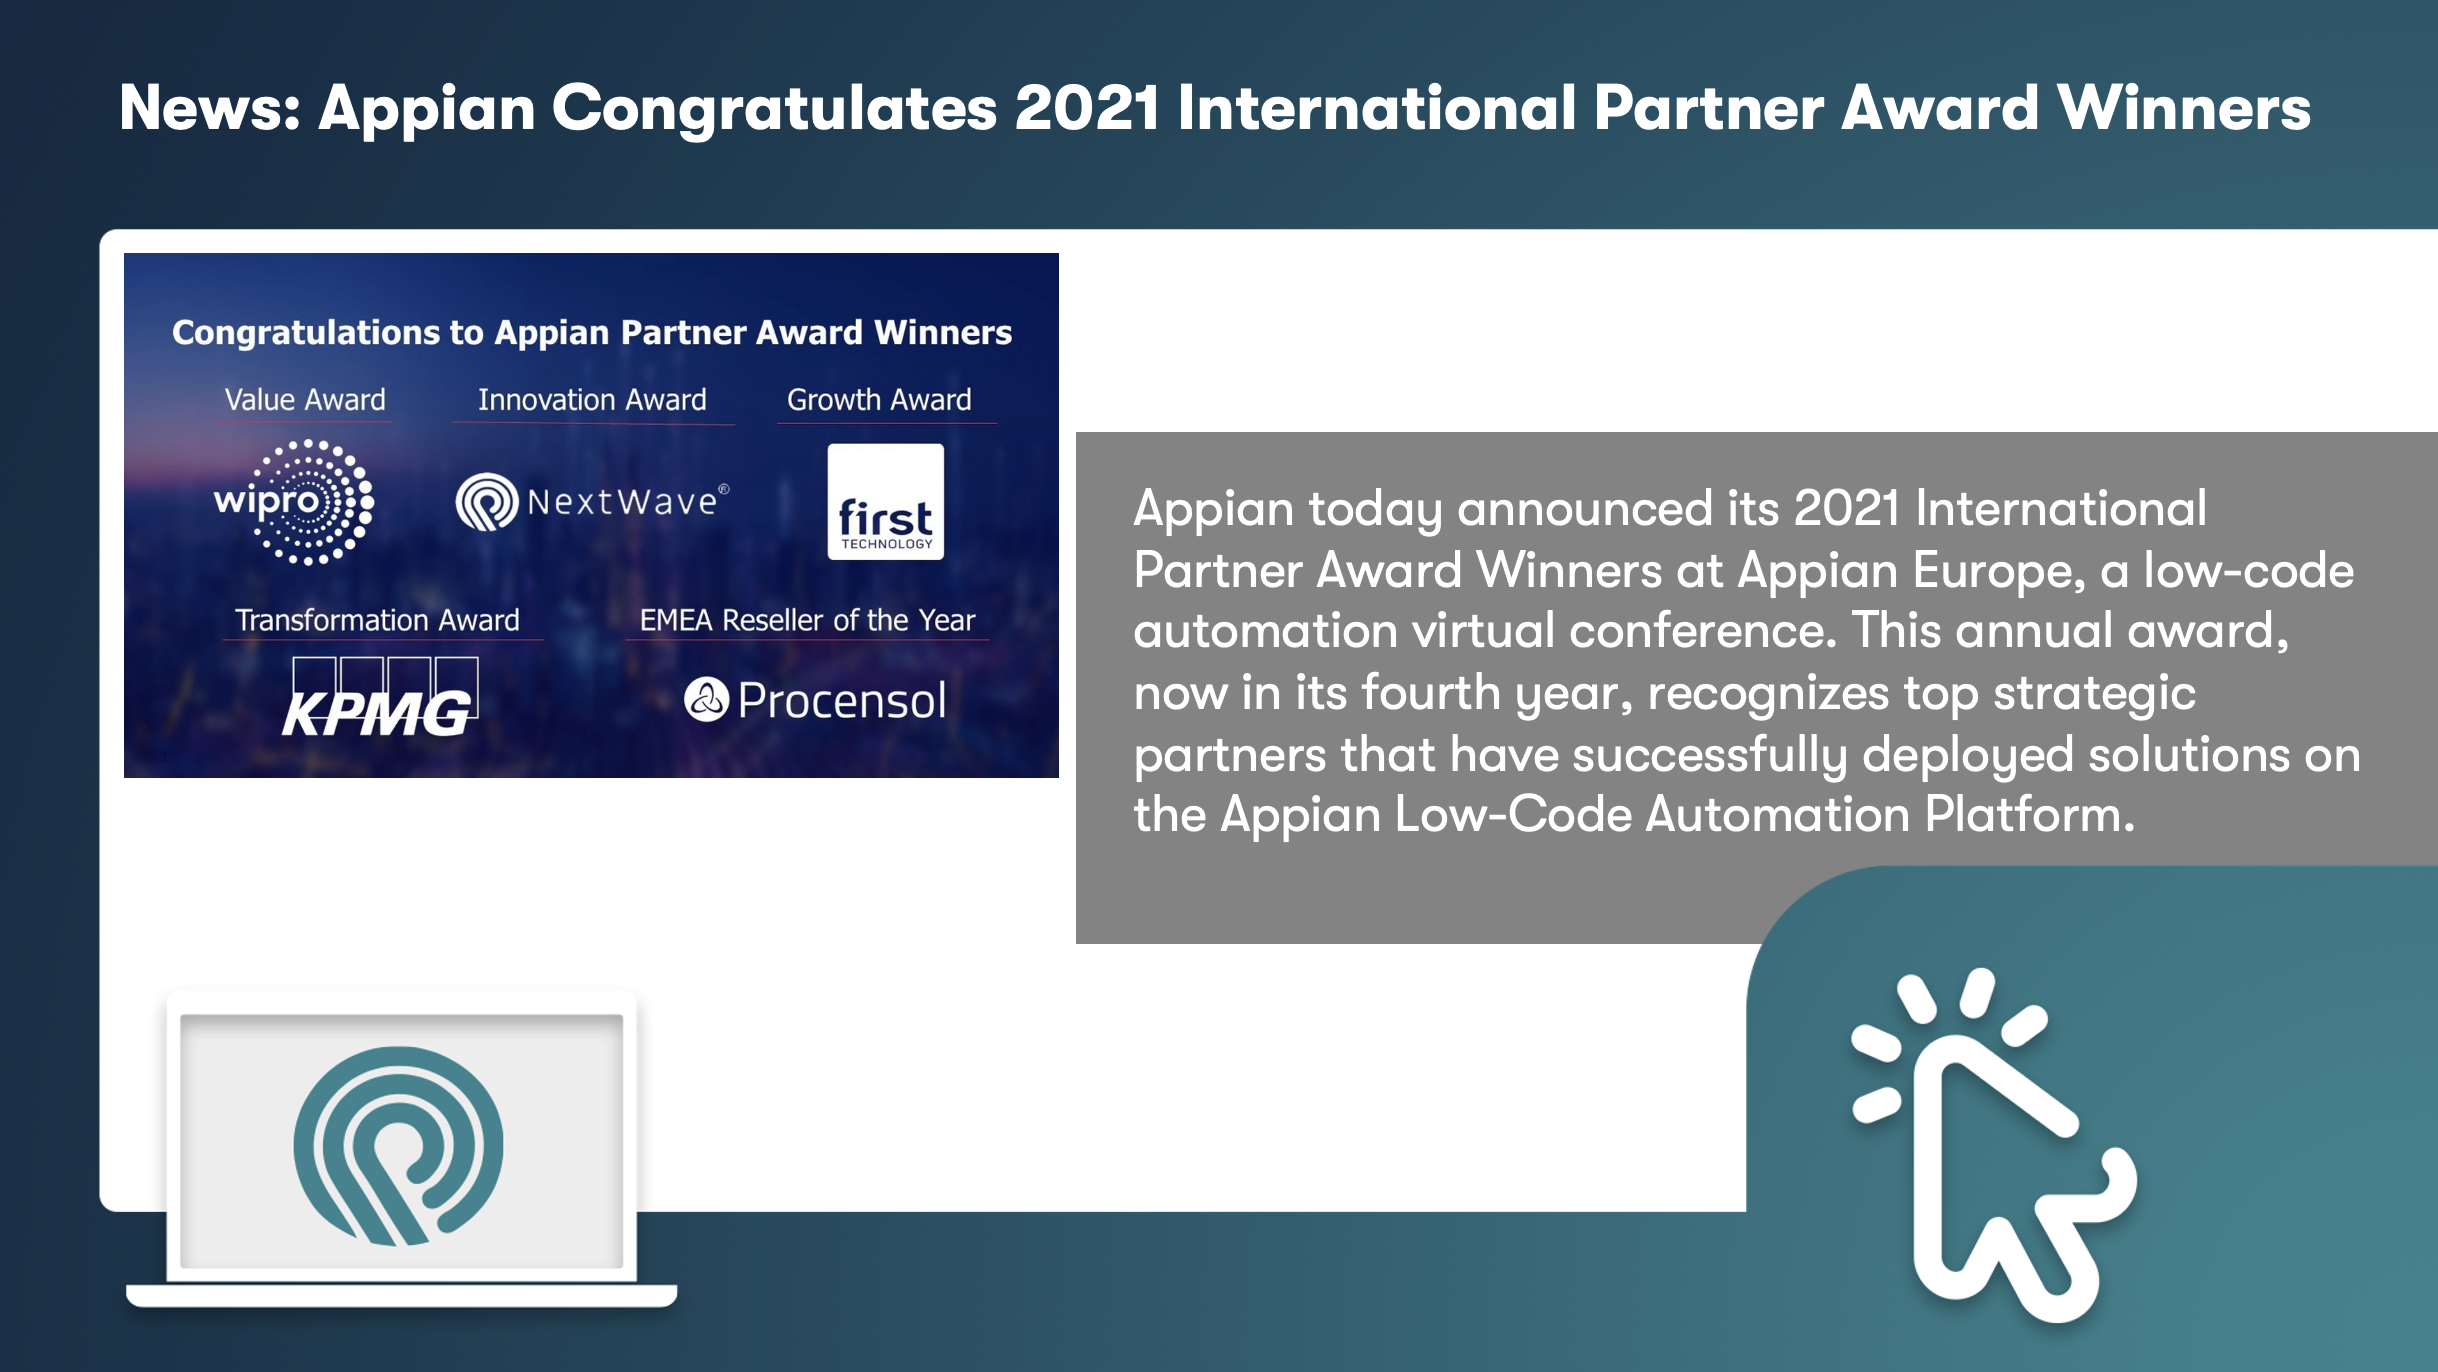 News: Appian Congratulates 2021 International Partner Award Winners